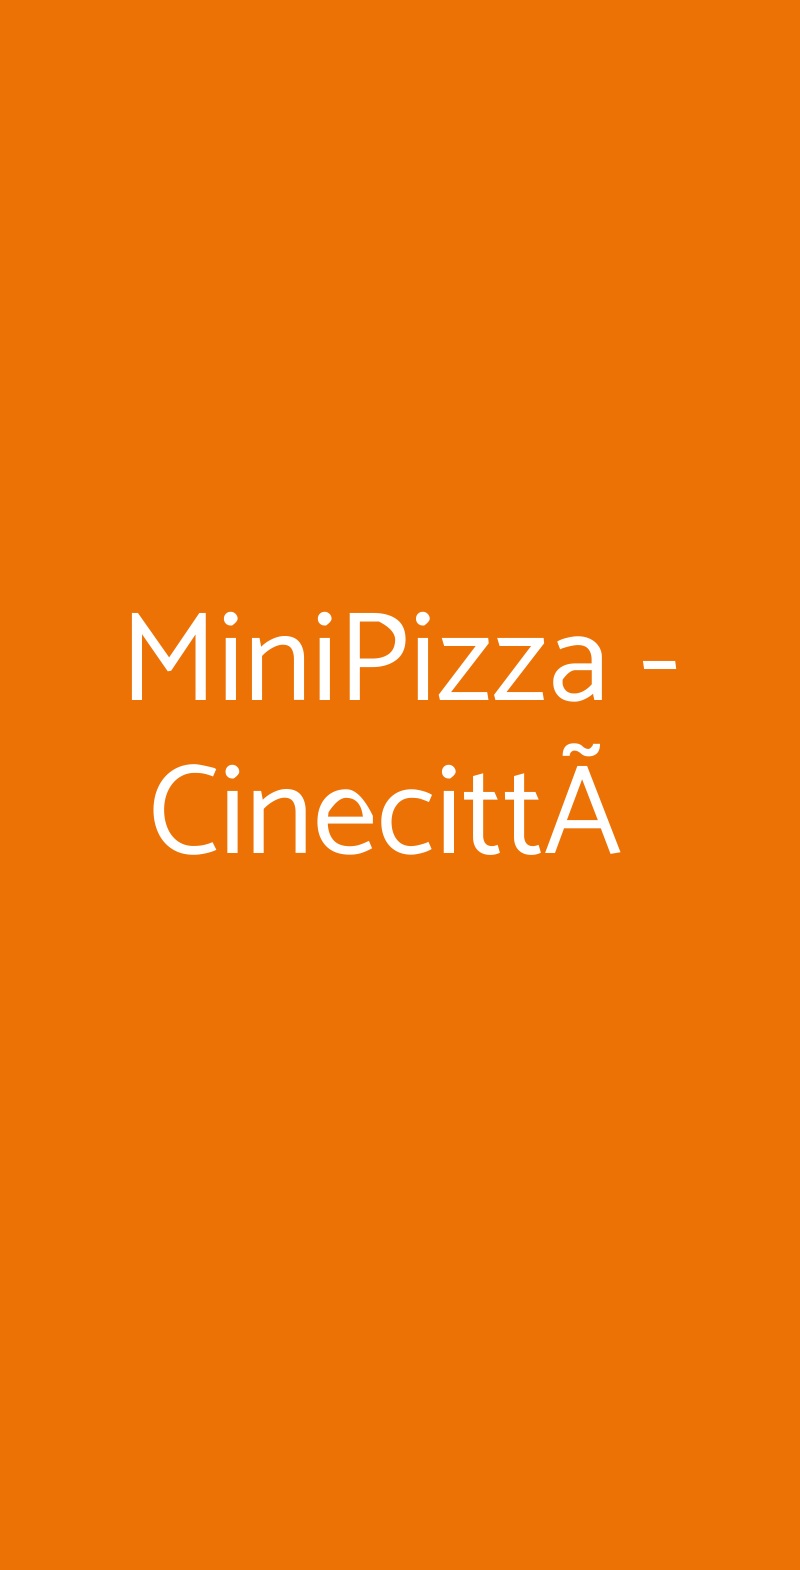 MiniPizza - CinecittÃ  Roma menù 1 pagina